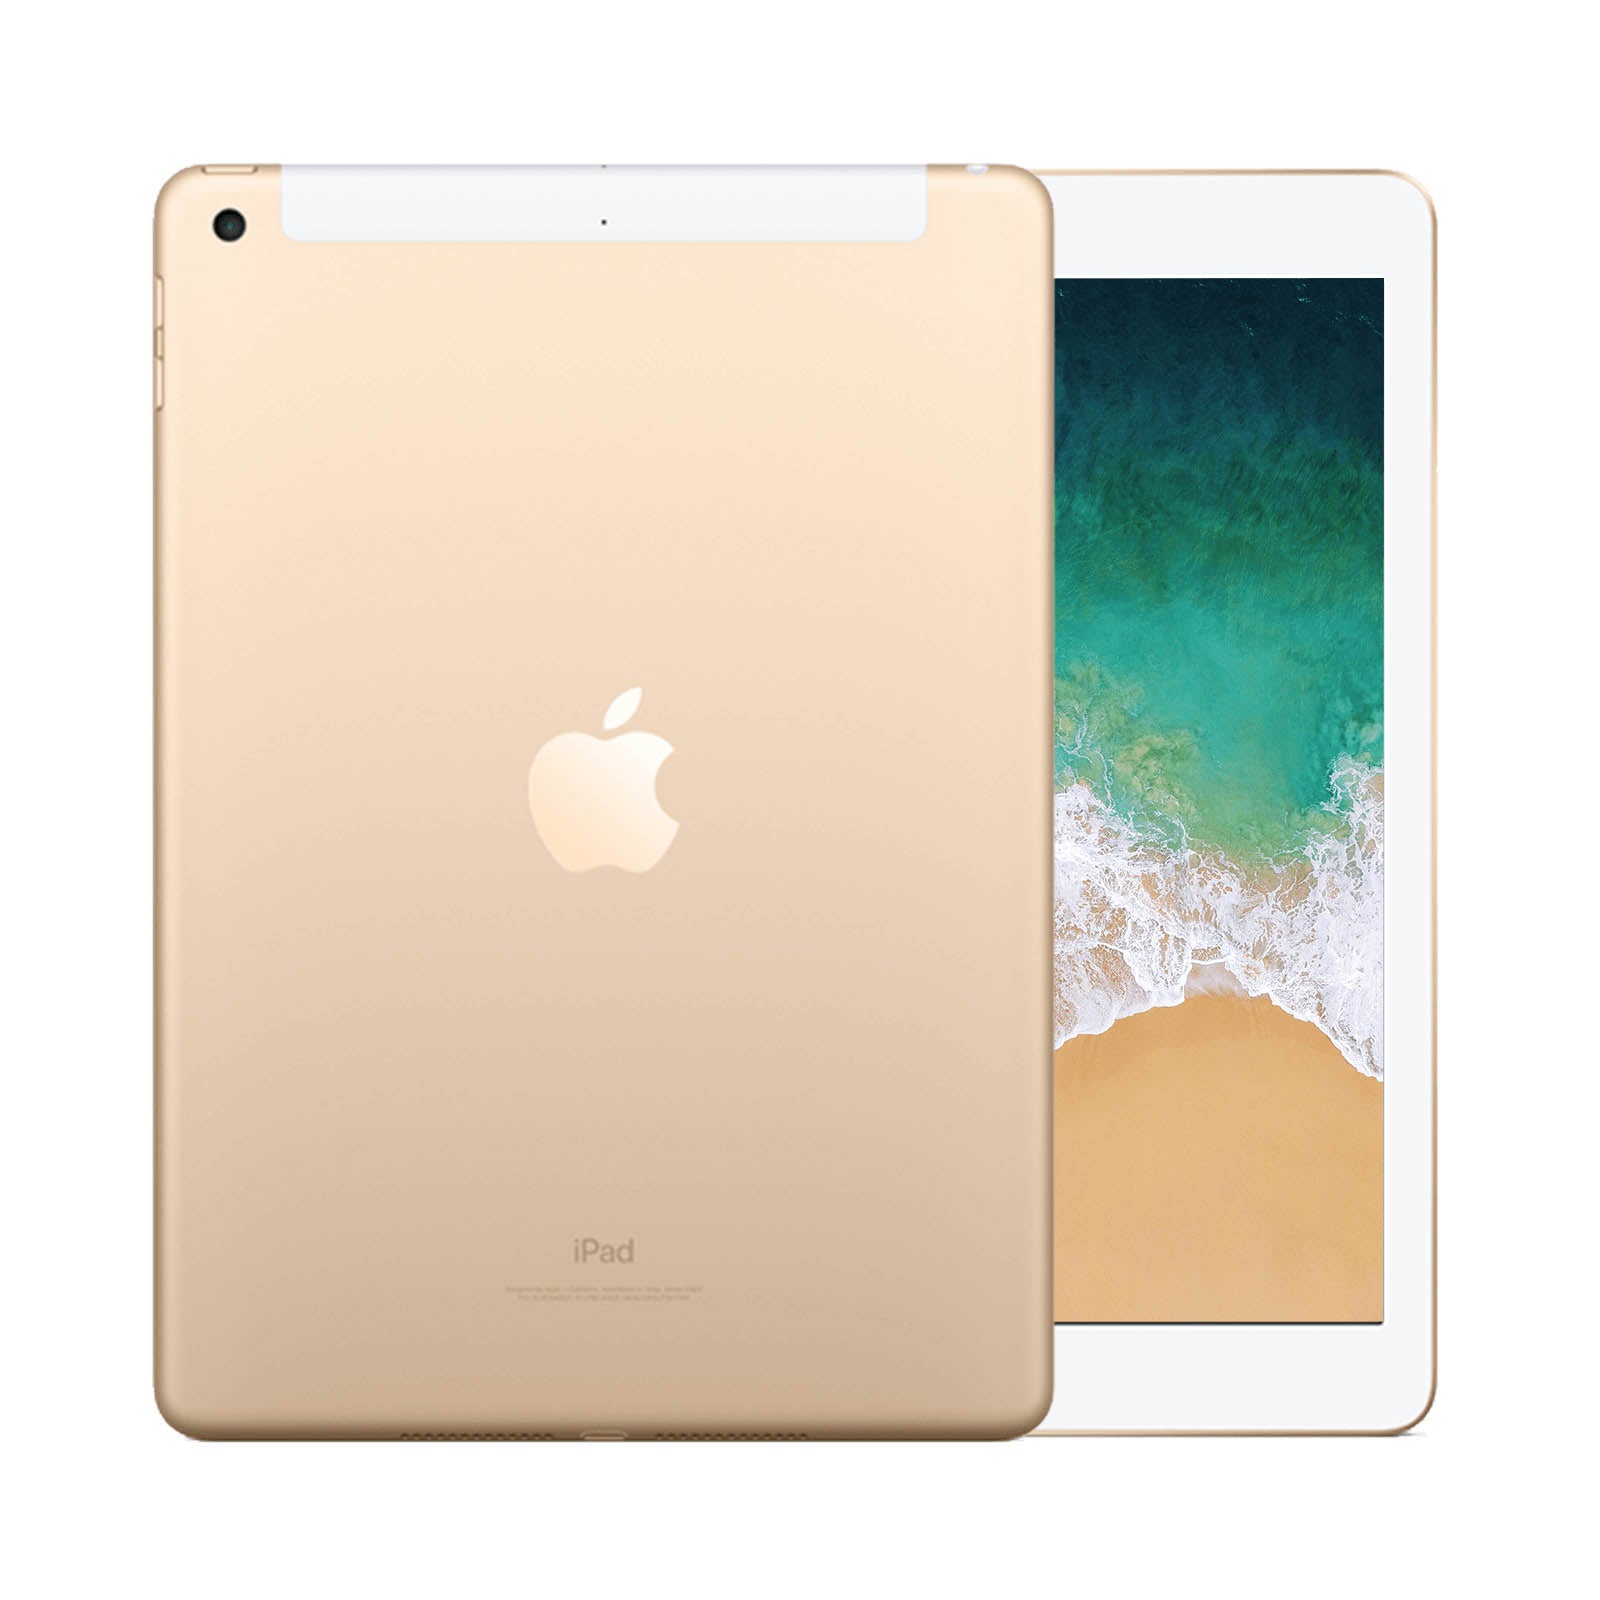 Ristrutturatoished Apple iPad Air 2 128GB WiFi & Cellulare Oro Buono